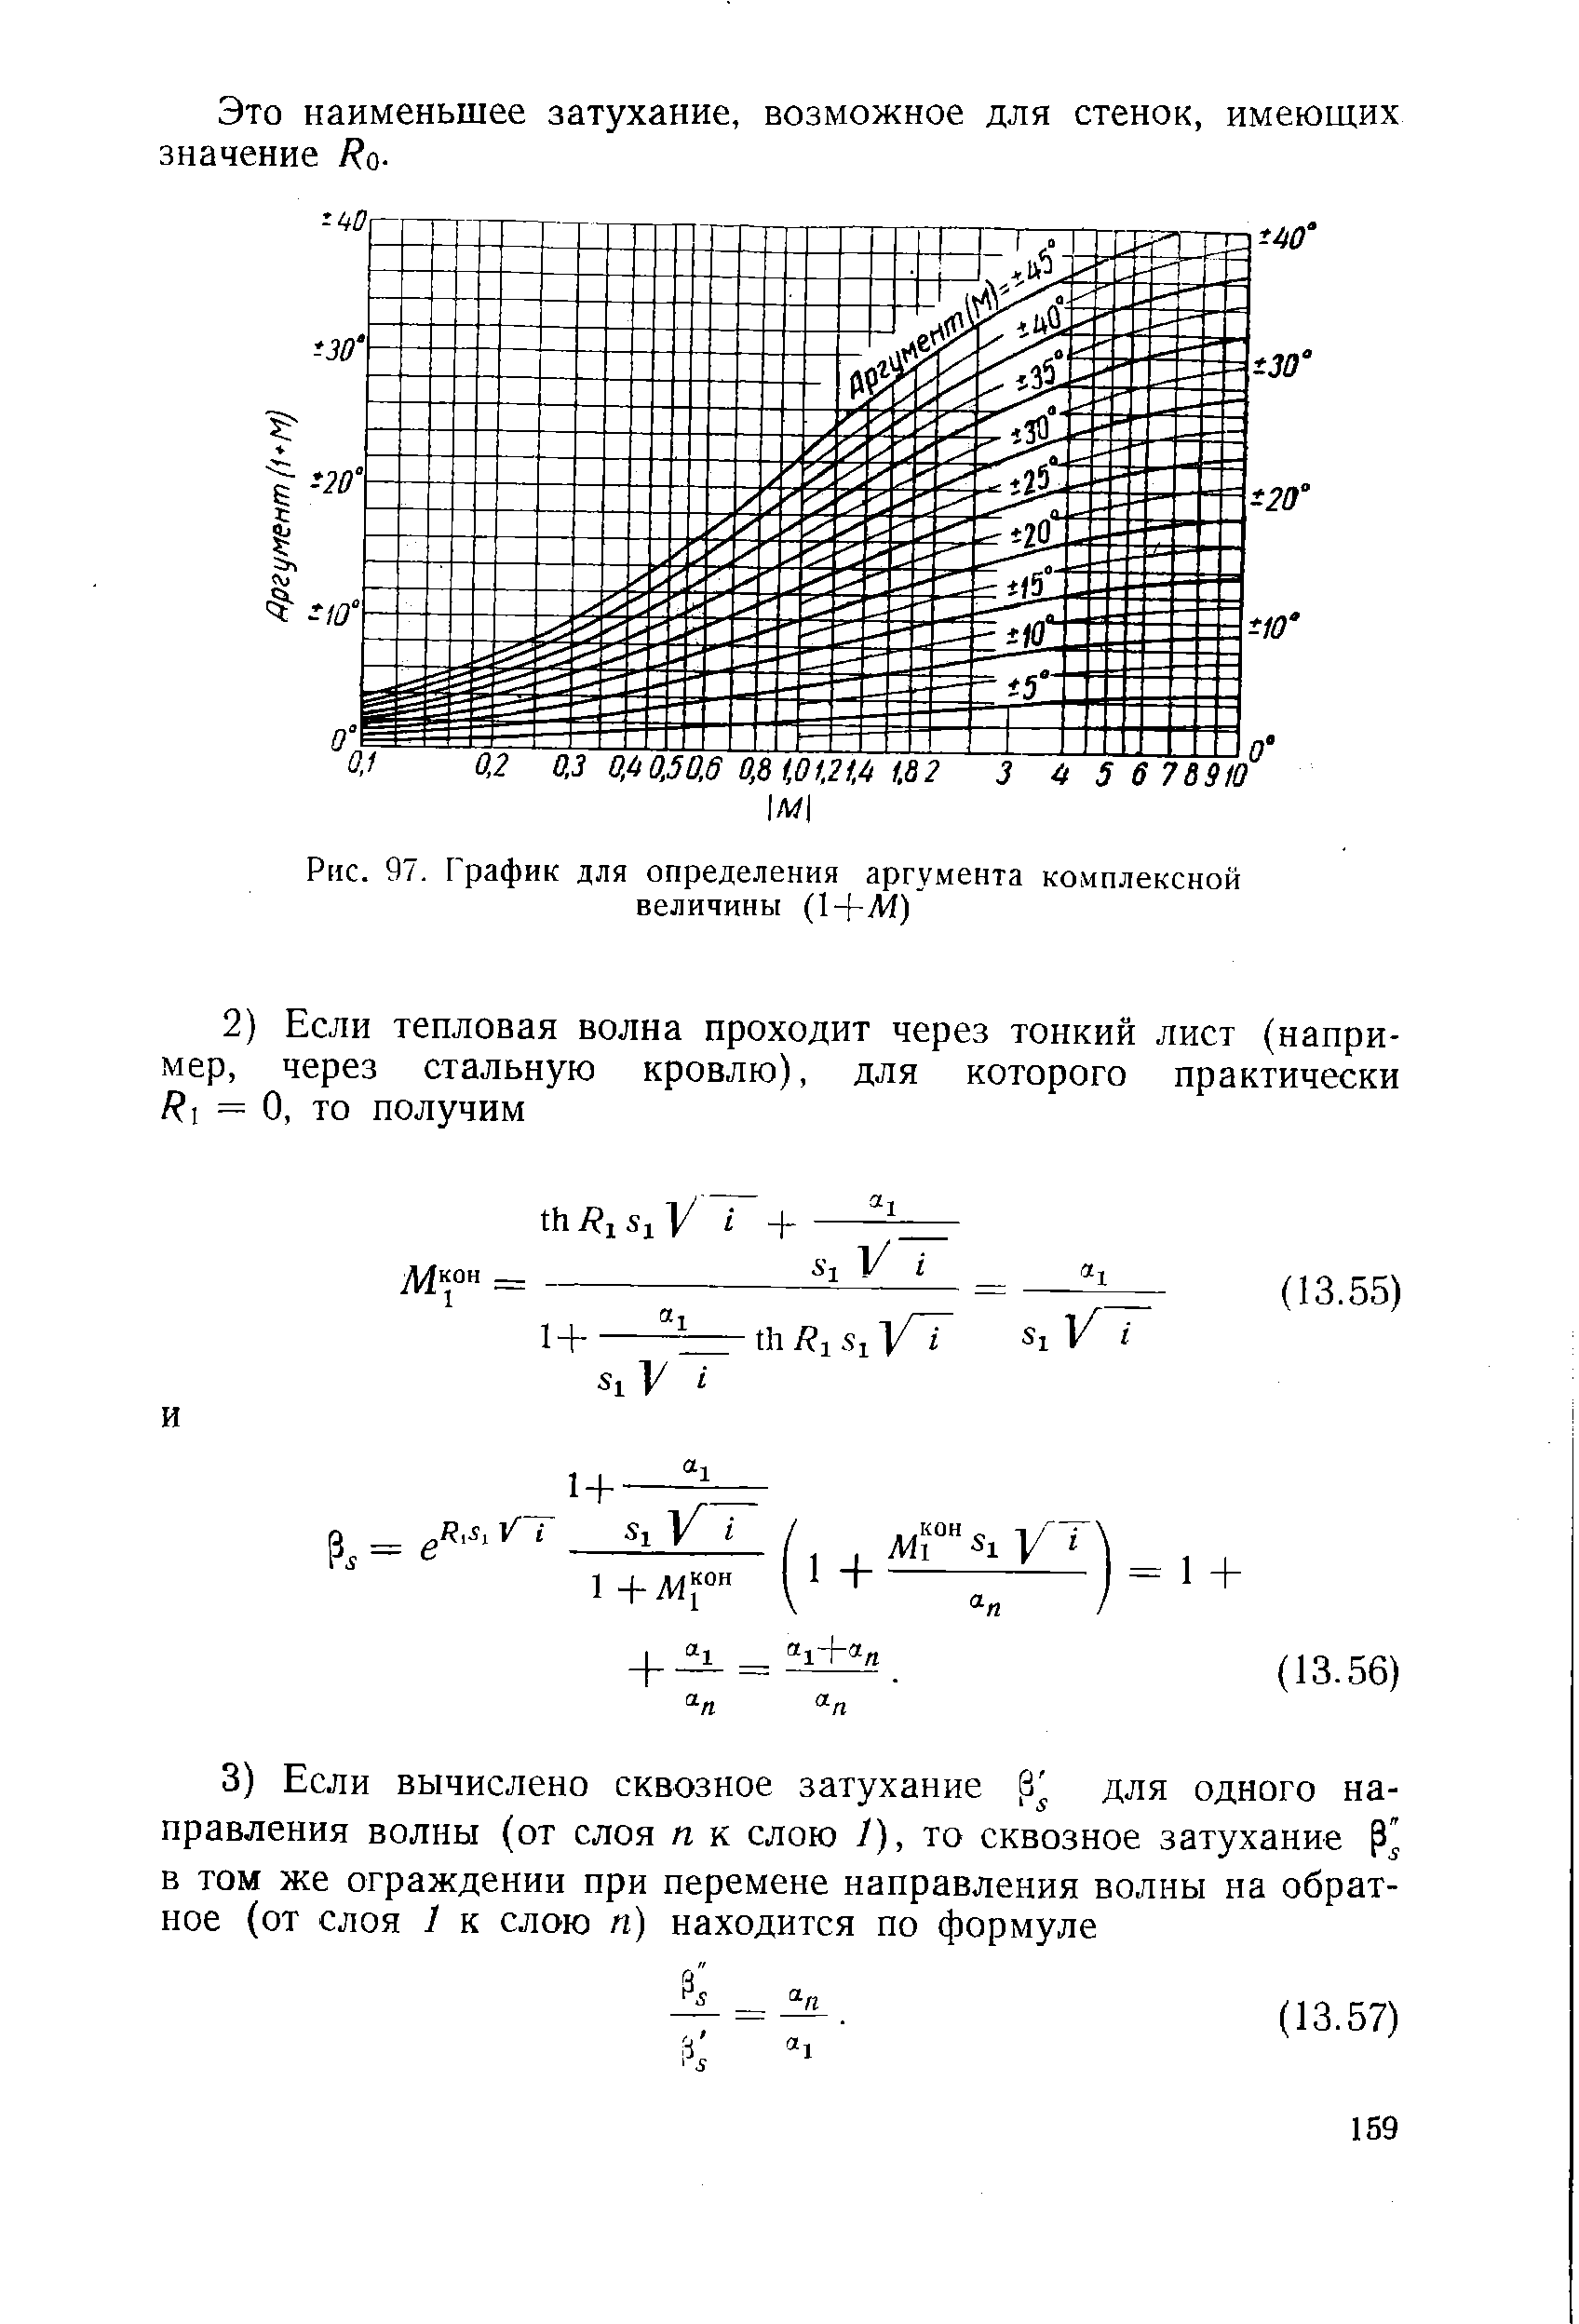 Рис. 97. График для определения аргумента комплексной величины (1+И4)
